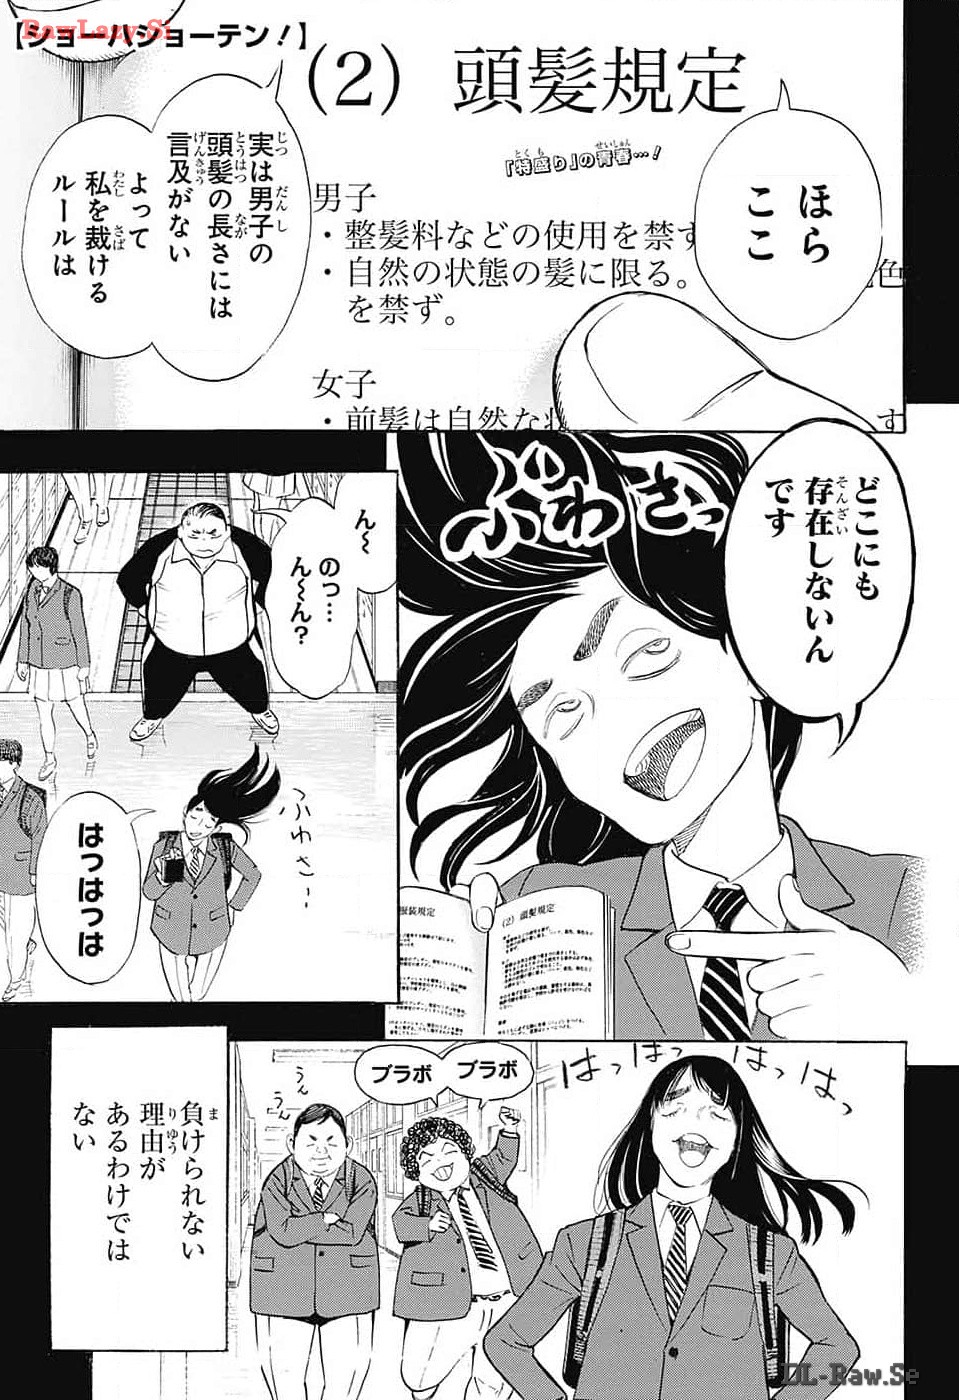 Show-ha Shou-ten! - Chapter 29 - Page 1